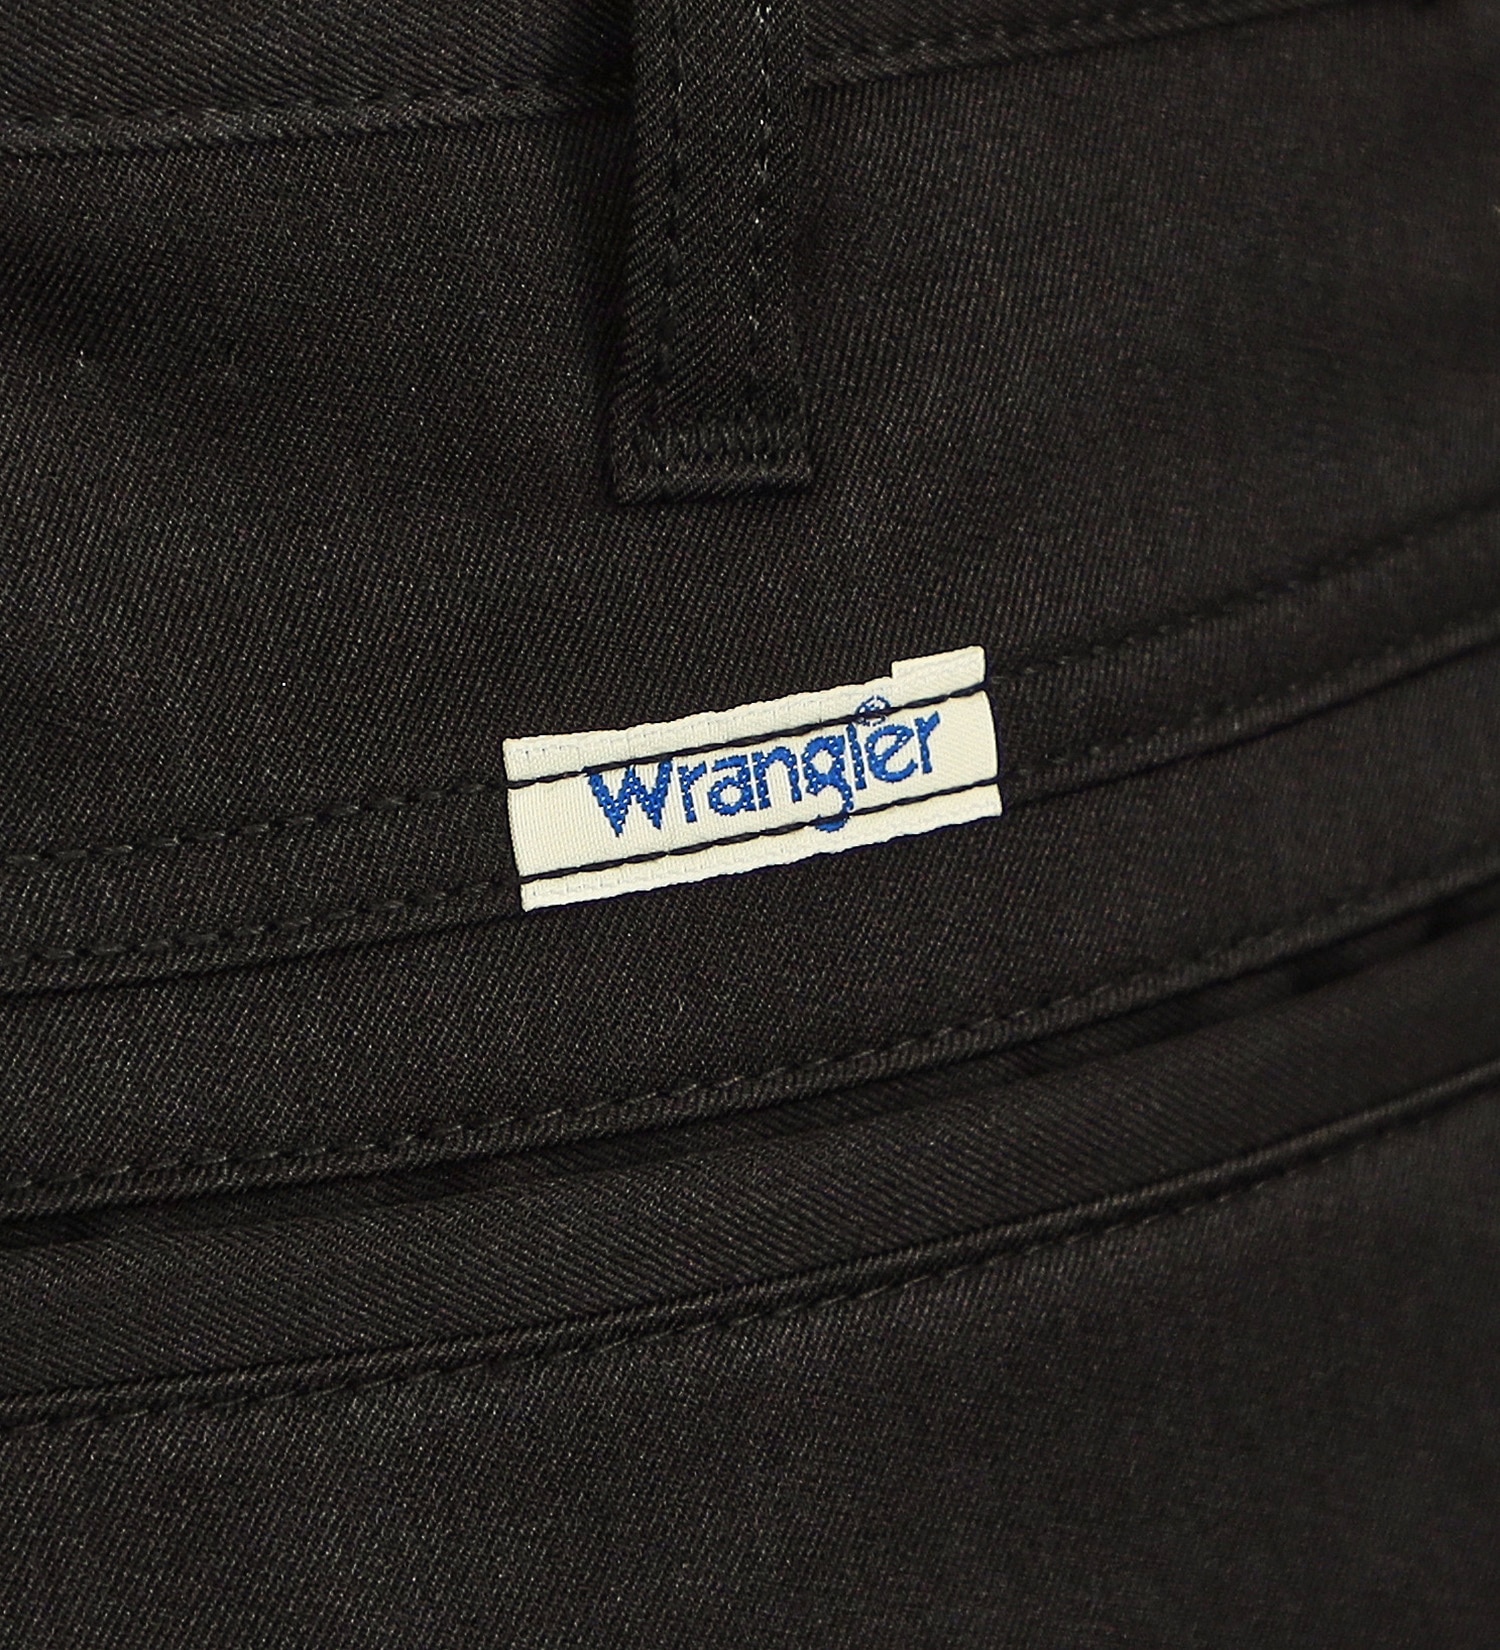 Wrangler(ラングラー)のイージーケア トラウザーパンツ|パンツ/パンツ/メンズ|ブラック